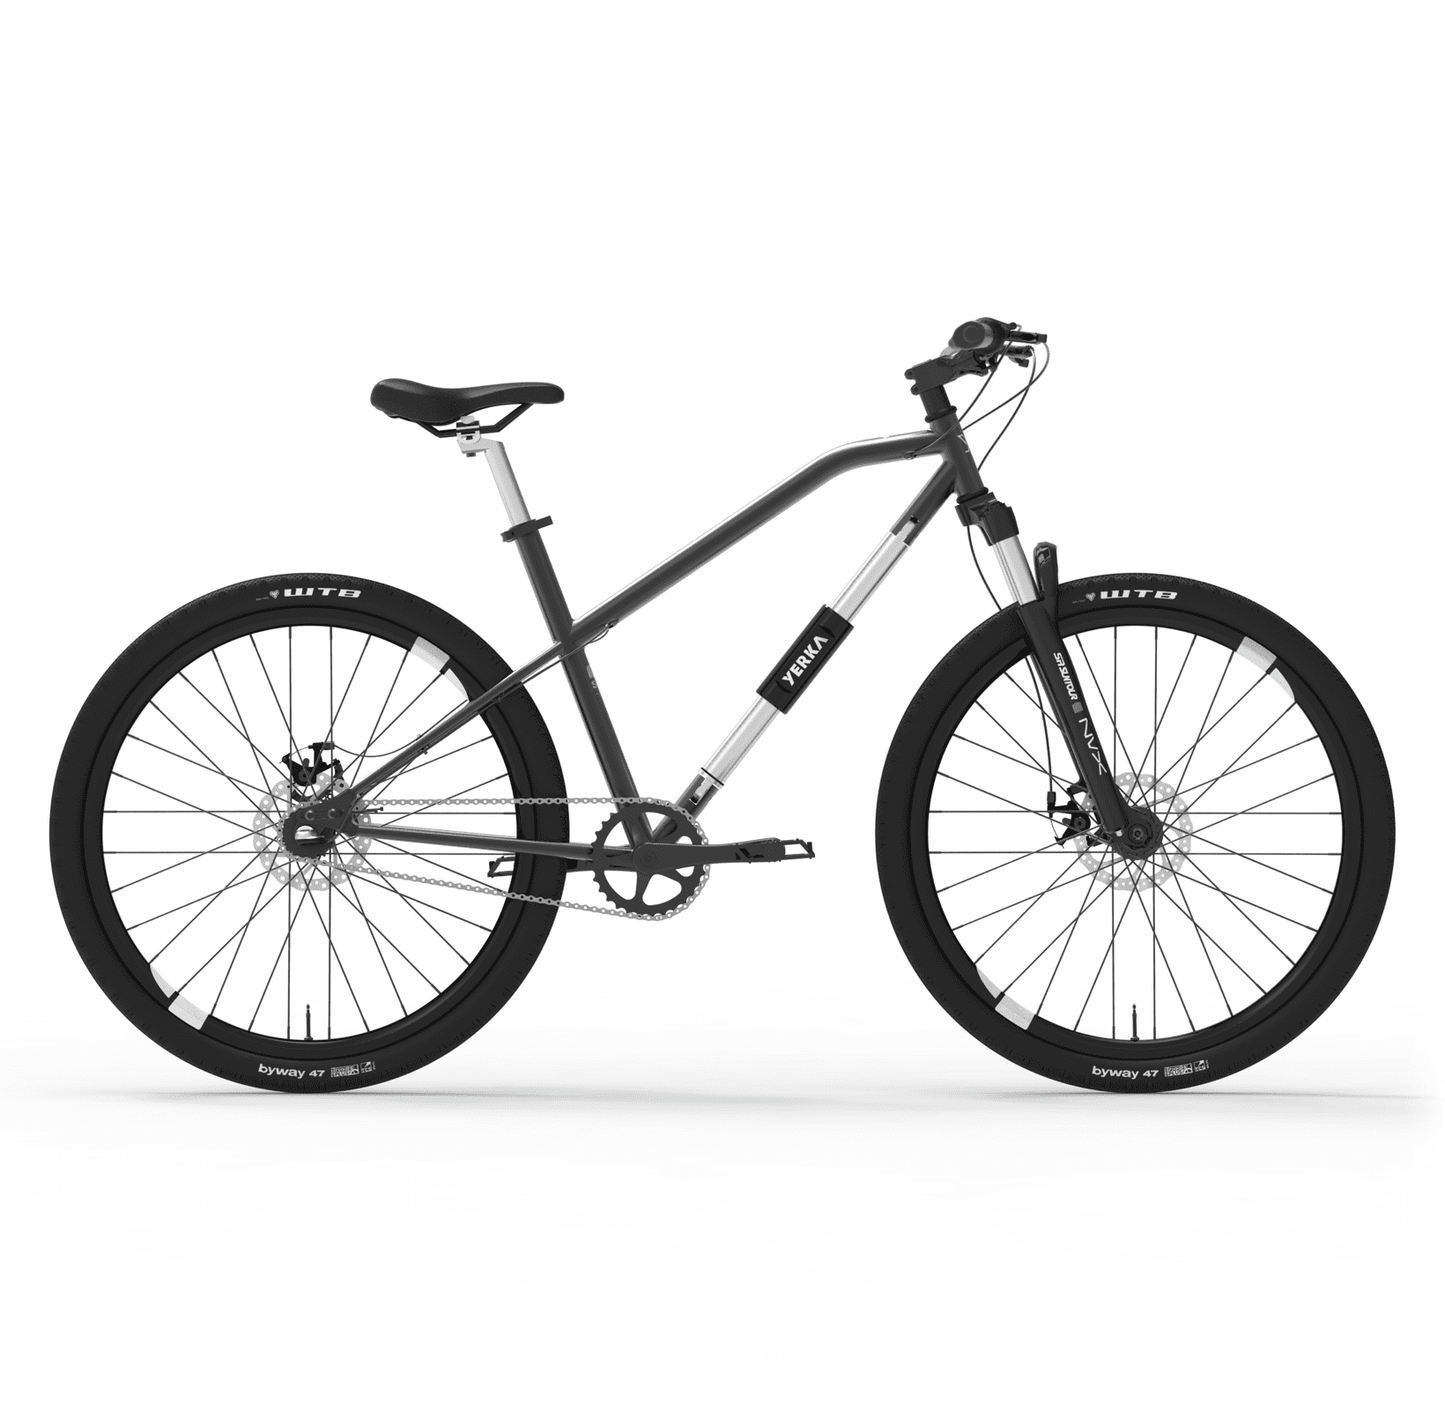 TEST YERKA V4 CON SUSPENSIÓN -mejor-bicicleta-antirrobo-urbana-diseño-chile-hibrida-aro-28-29-candado-integrado-online